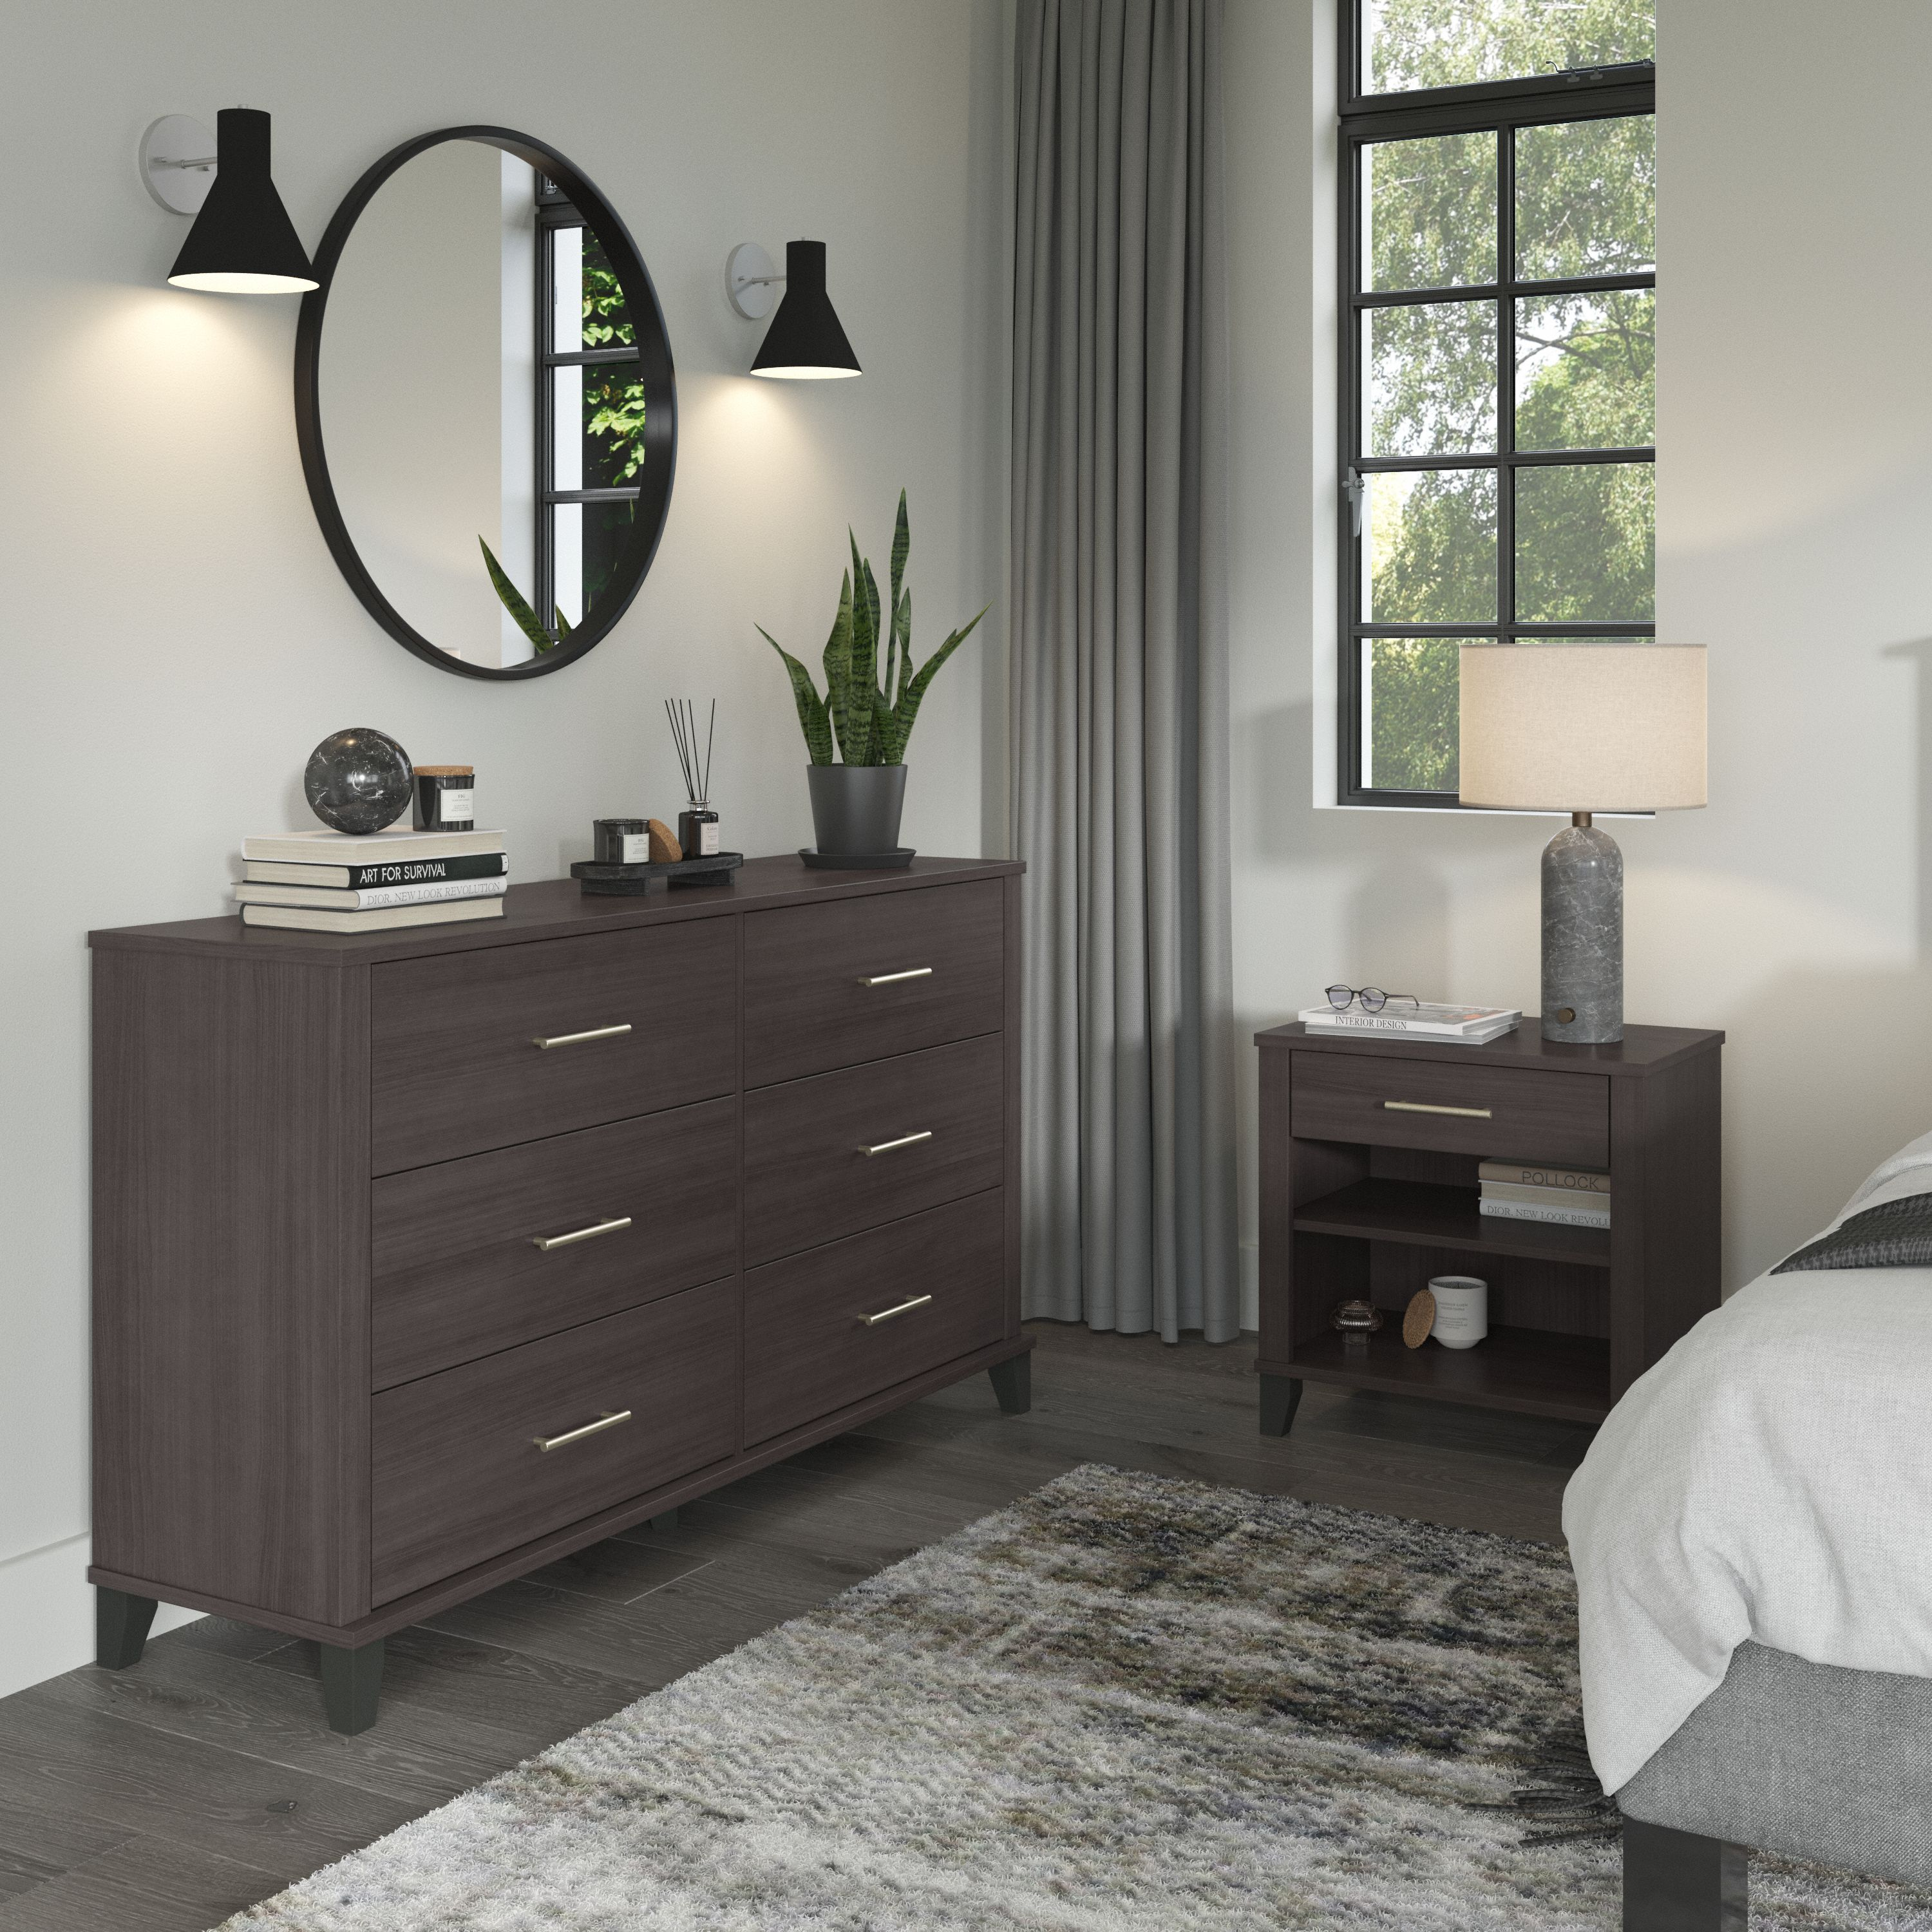 Shop Bush Furniture Somerset 6 Drawer Dresser and Nightstand Set 01 SET035SG #color_storm gray